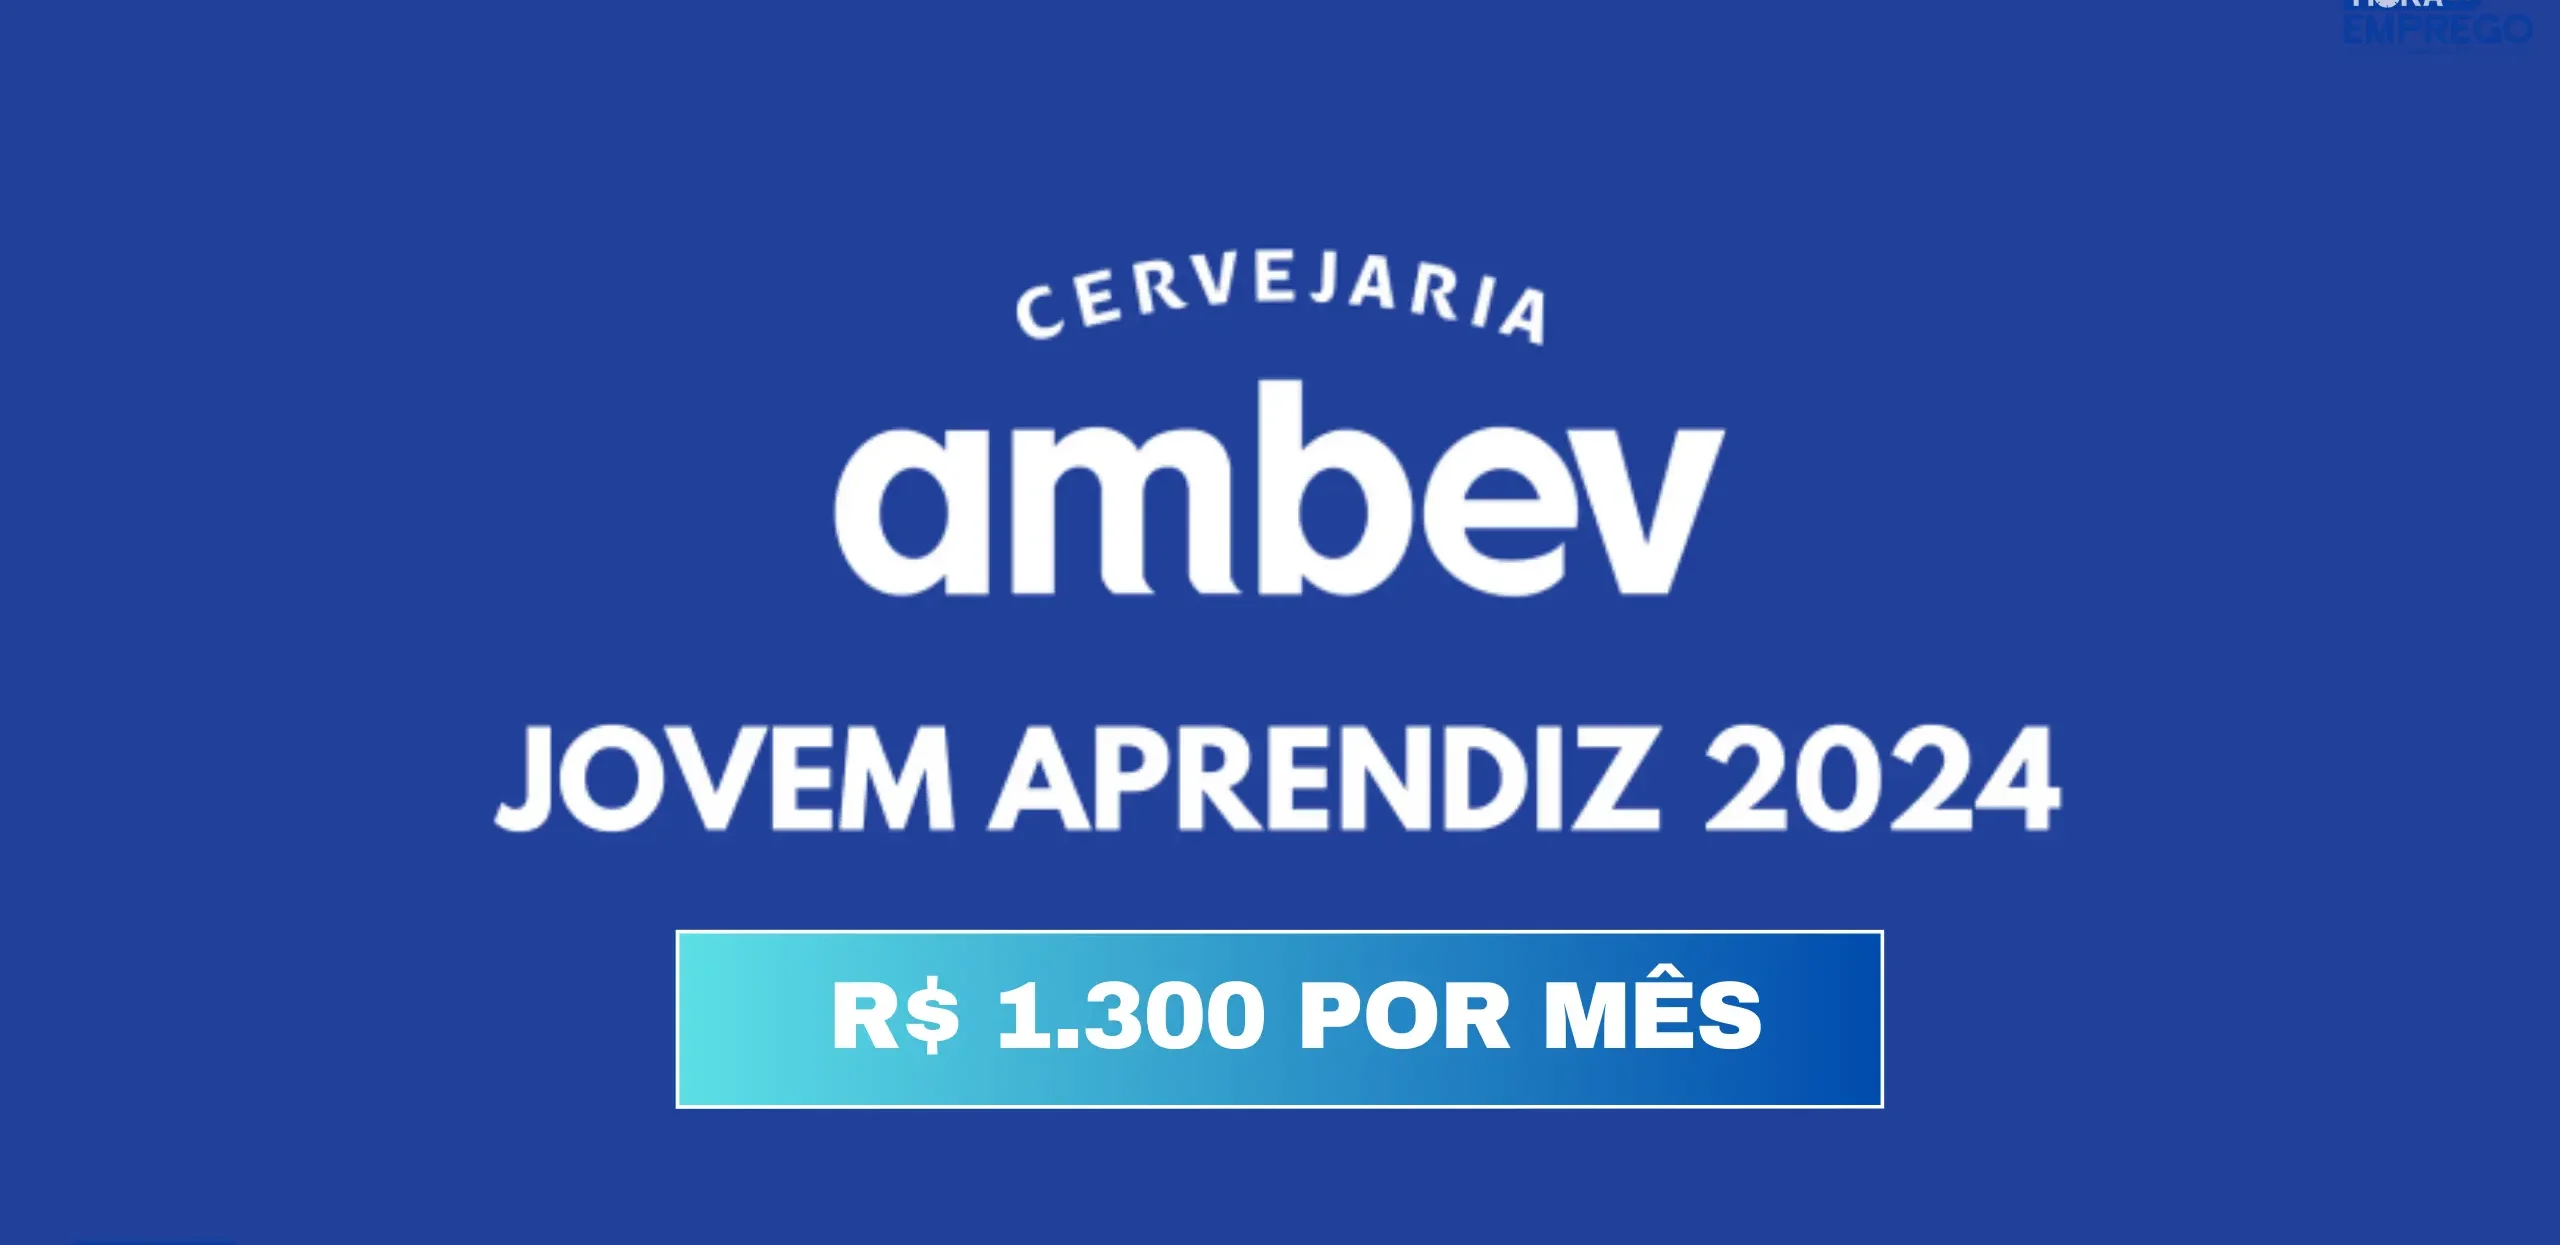 AMBEV ABRE INSCRIÇÕES PARA O PROGRAMA JOVEM APRENDIZ 2024 COM BOLSA DE ATÉ R$ 1 MIL POR MÊS